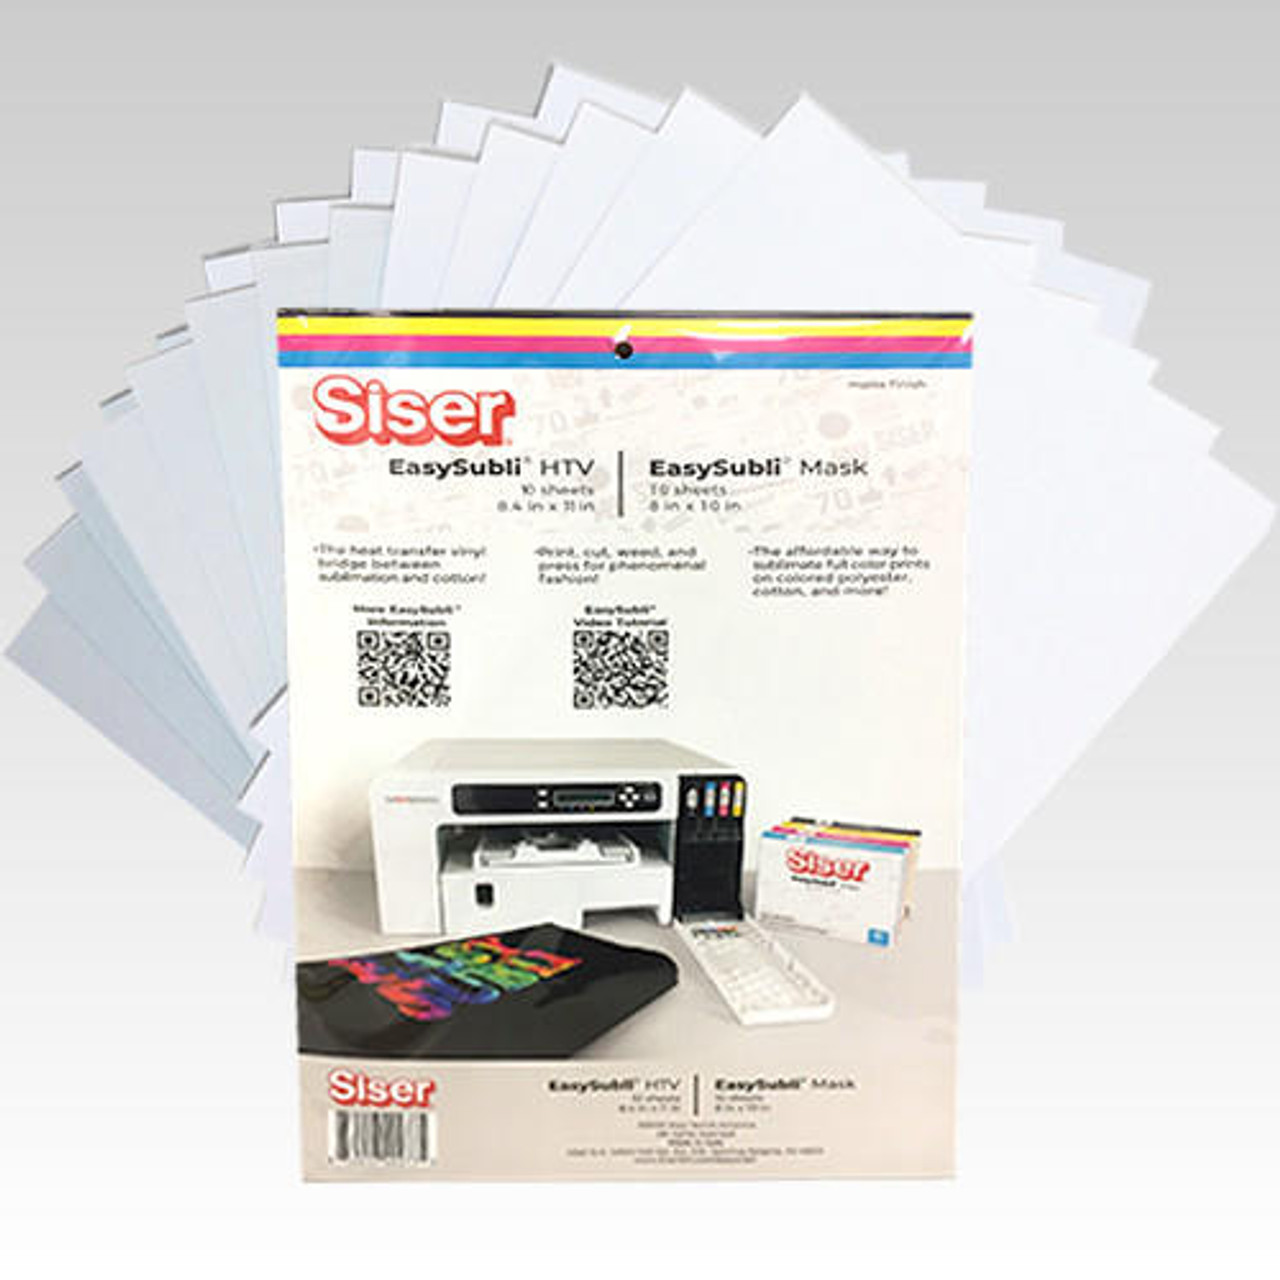 Siser® EasySubli® Heat Transfer Vinyl Sheets (8.4x11)